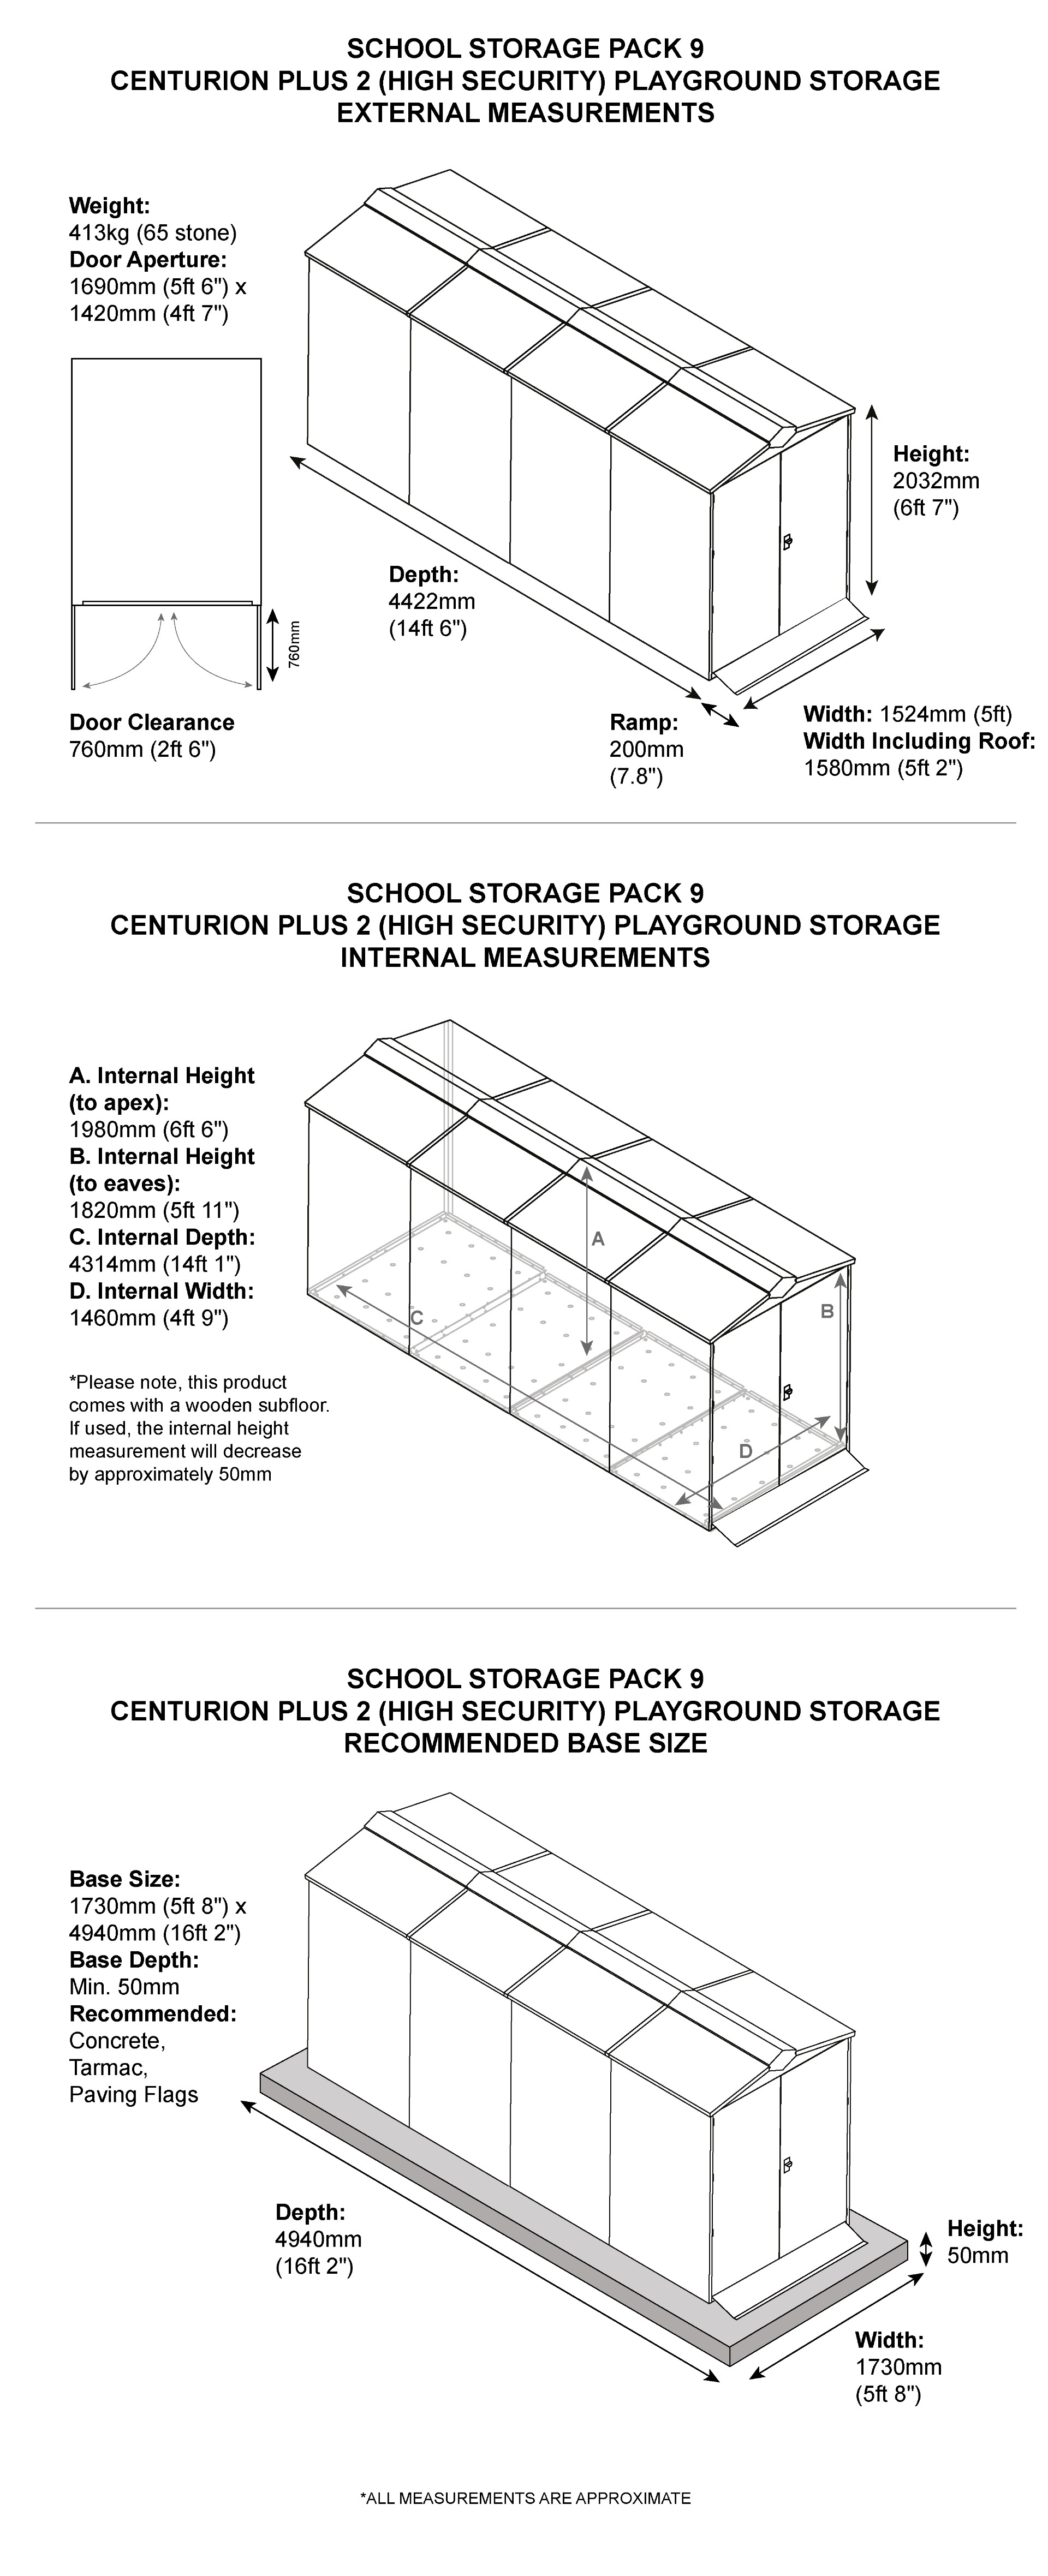 School Storage Pack 9 Dimensions